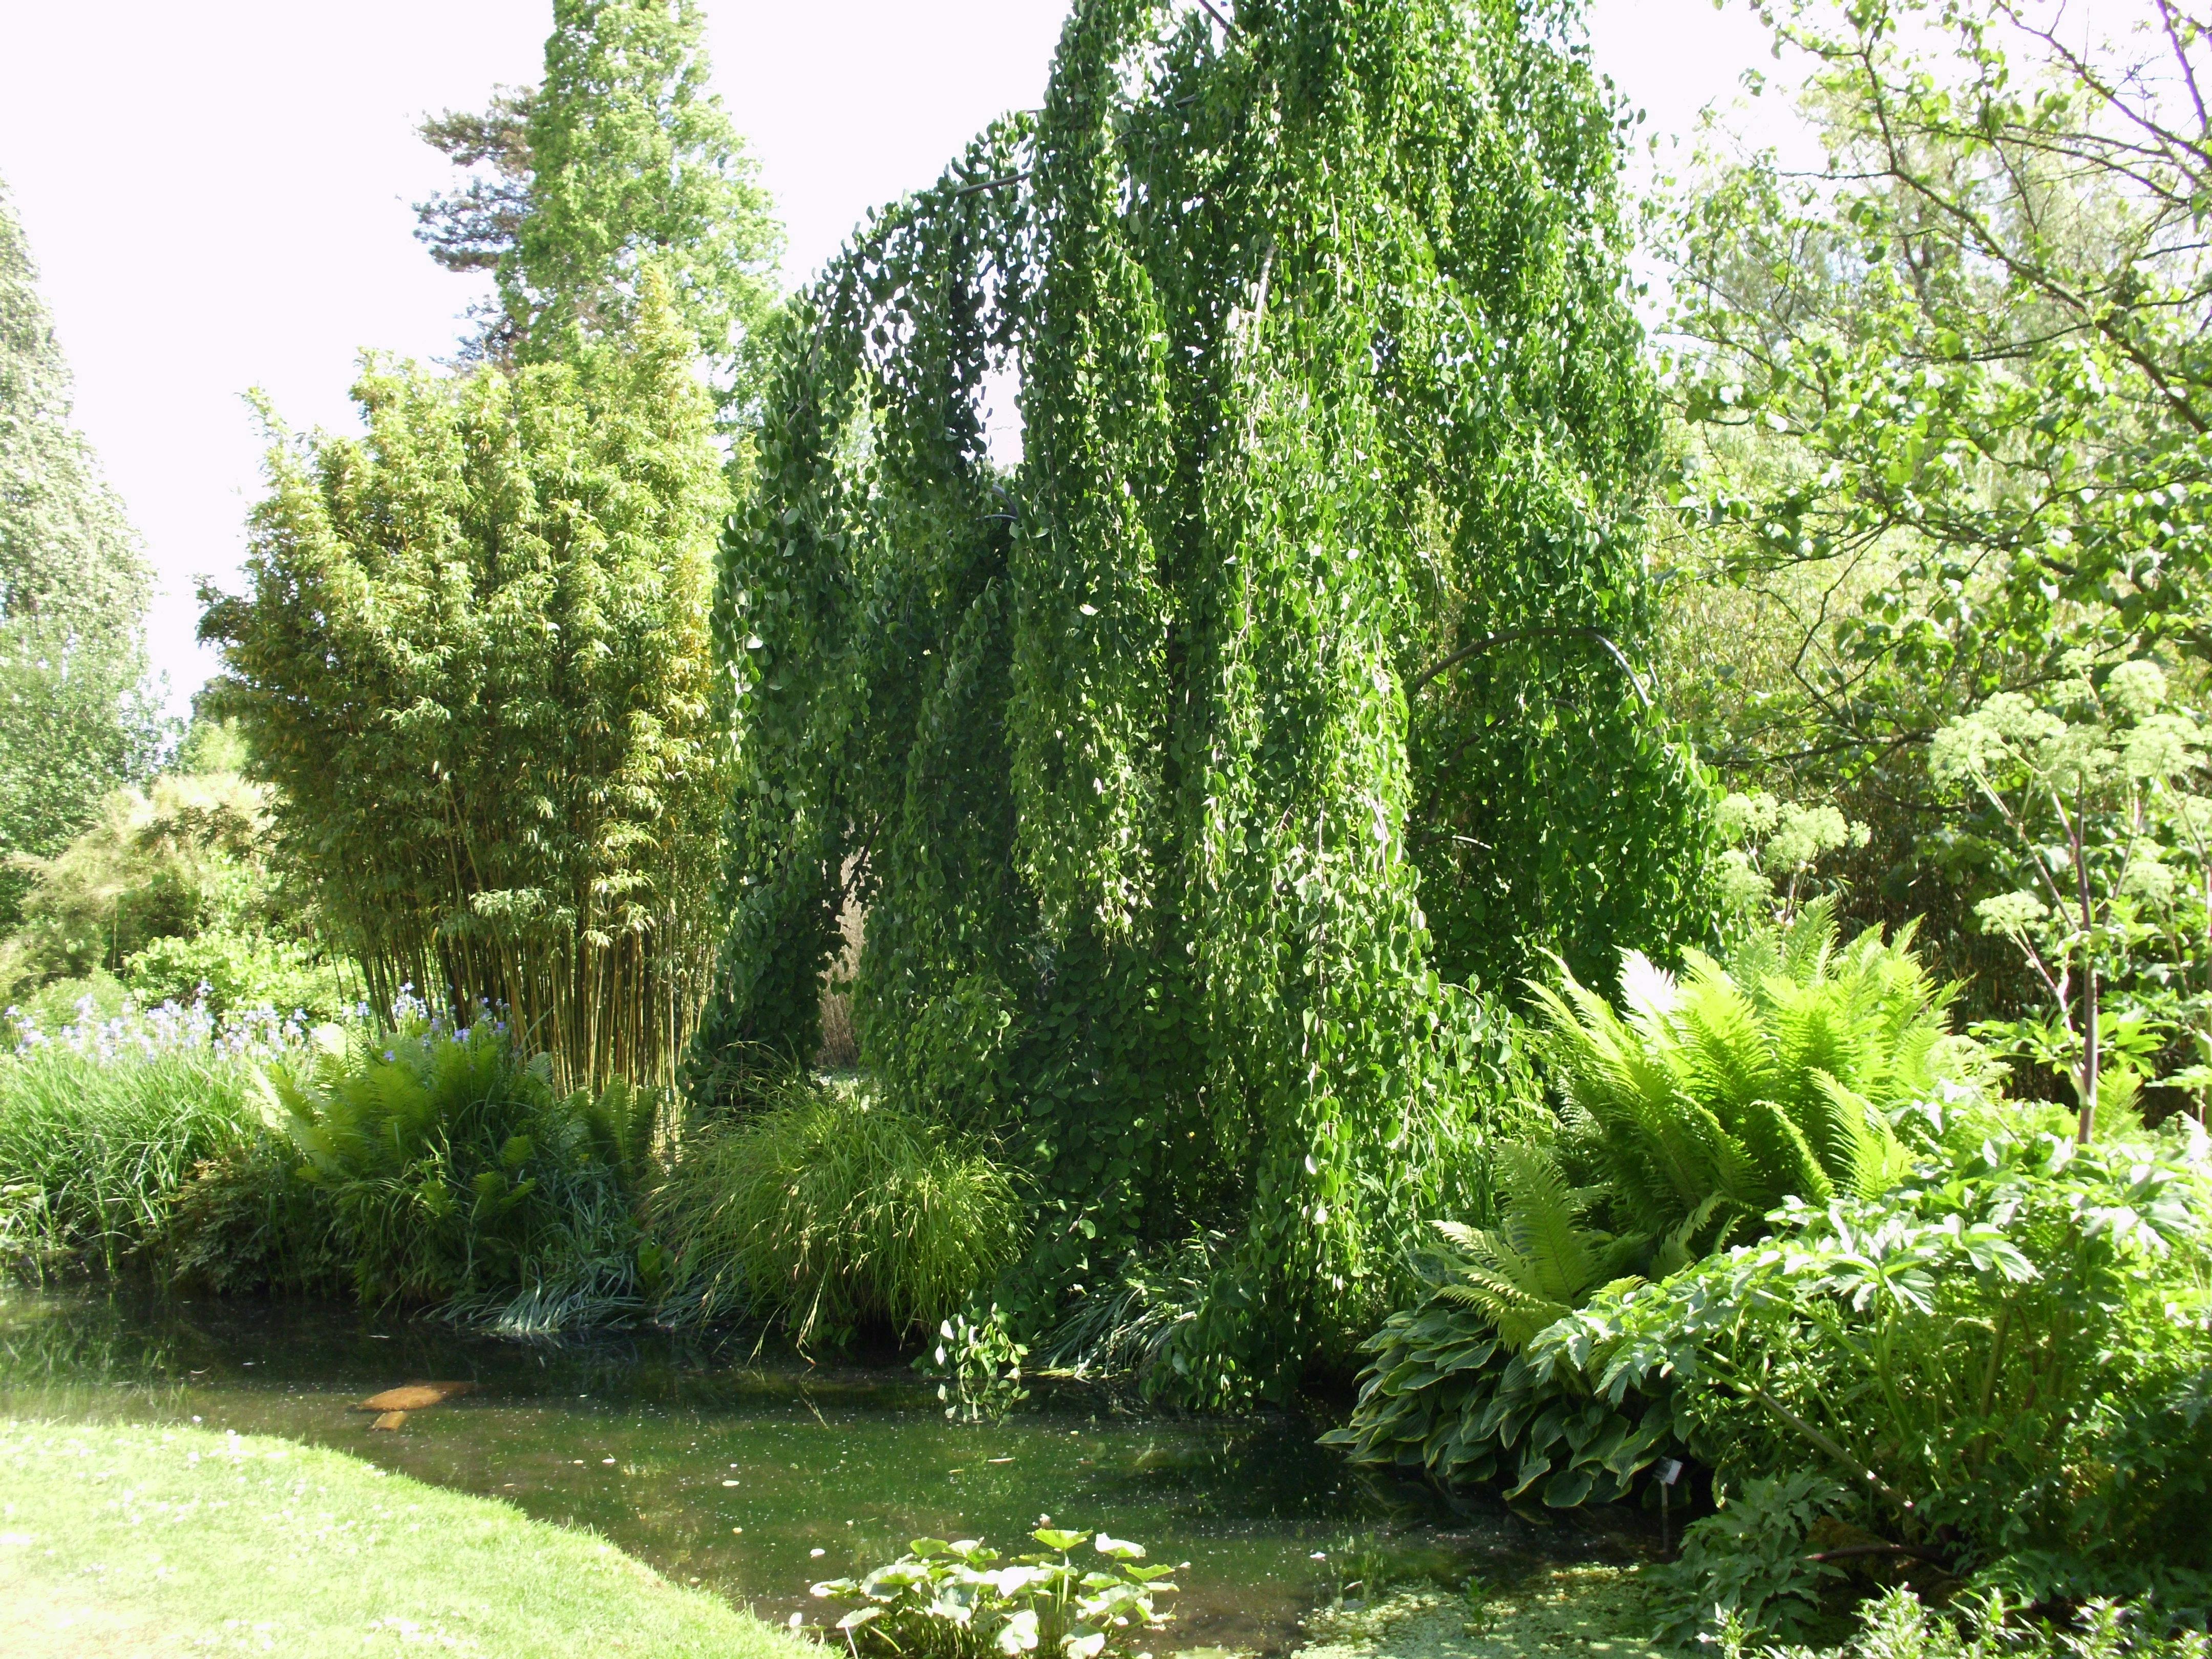 Free stock photo of Tree at Cambridge University Botanic Garden UK